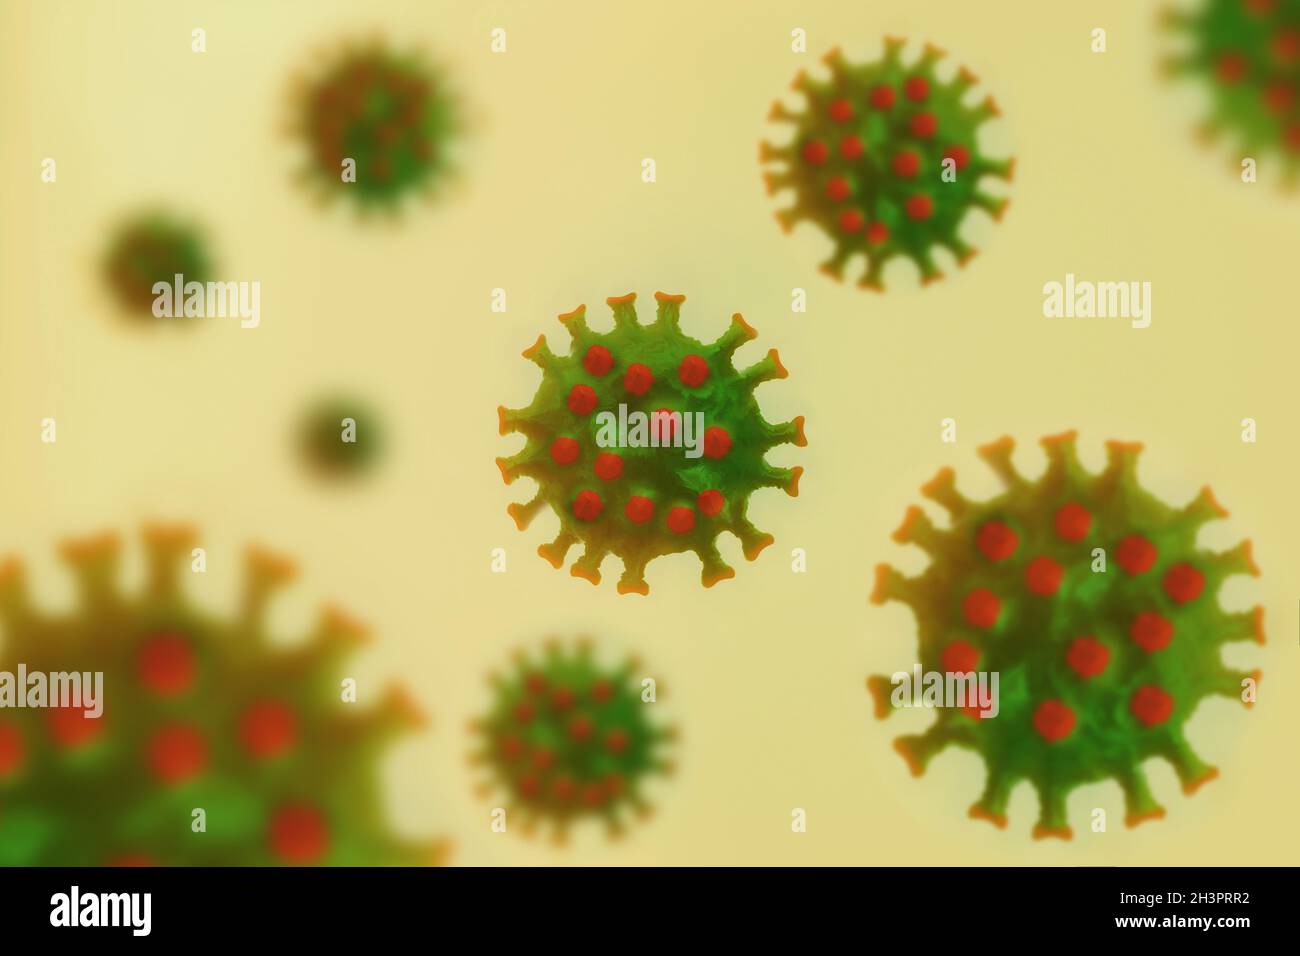 Coronavirus COVID-19. Infezione virale pandemica virale umana, sfocatura e prospettiva. Foto Stock